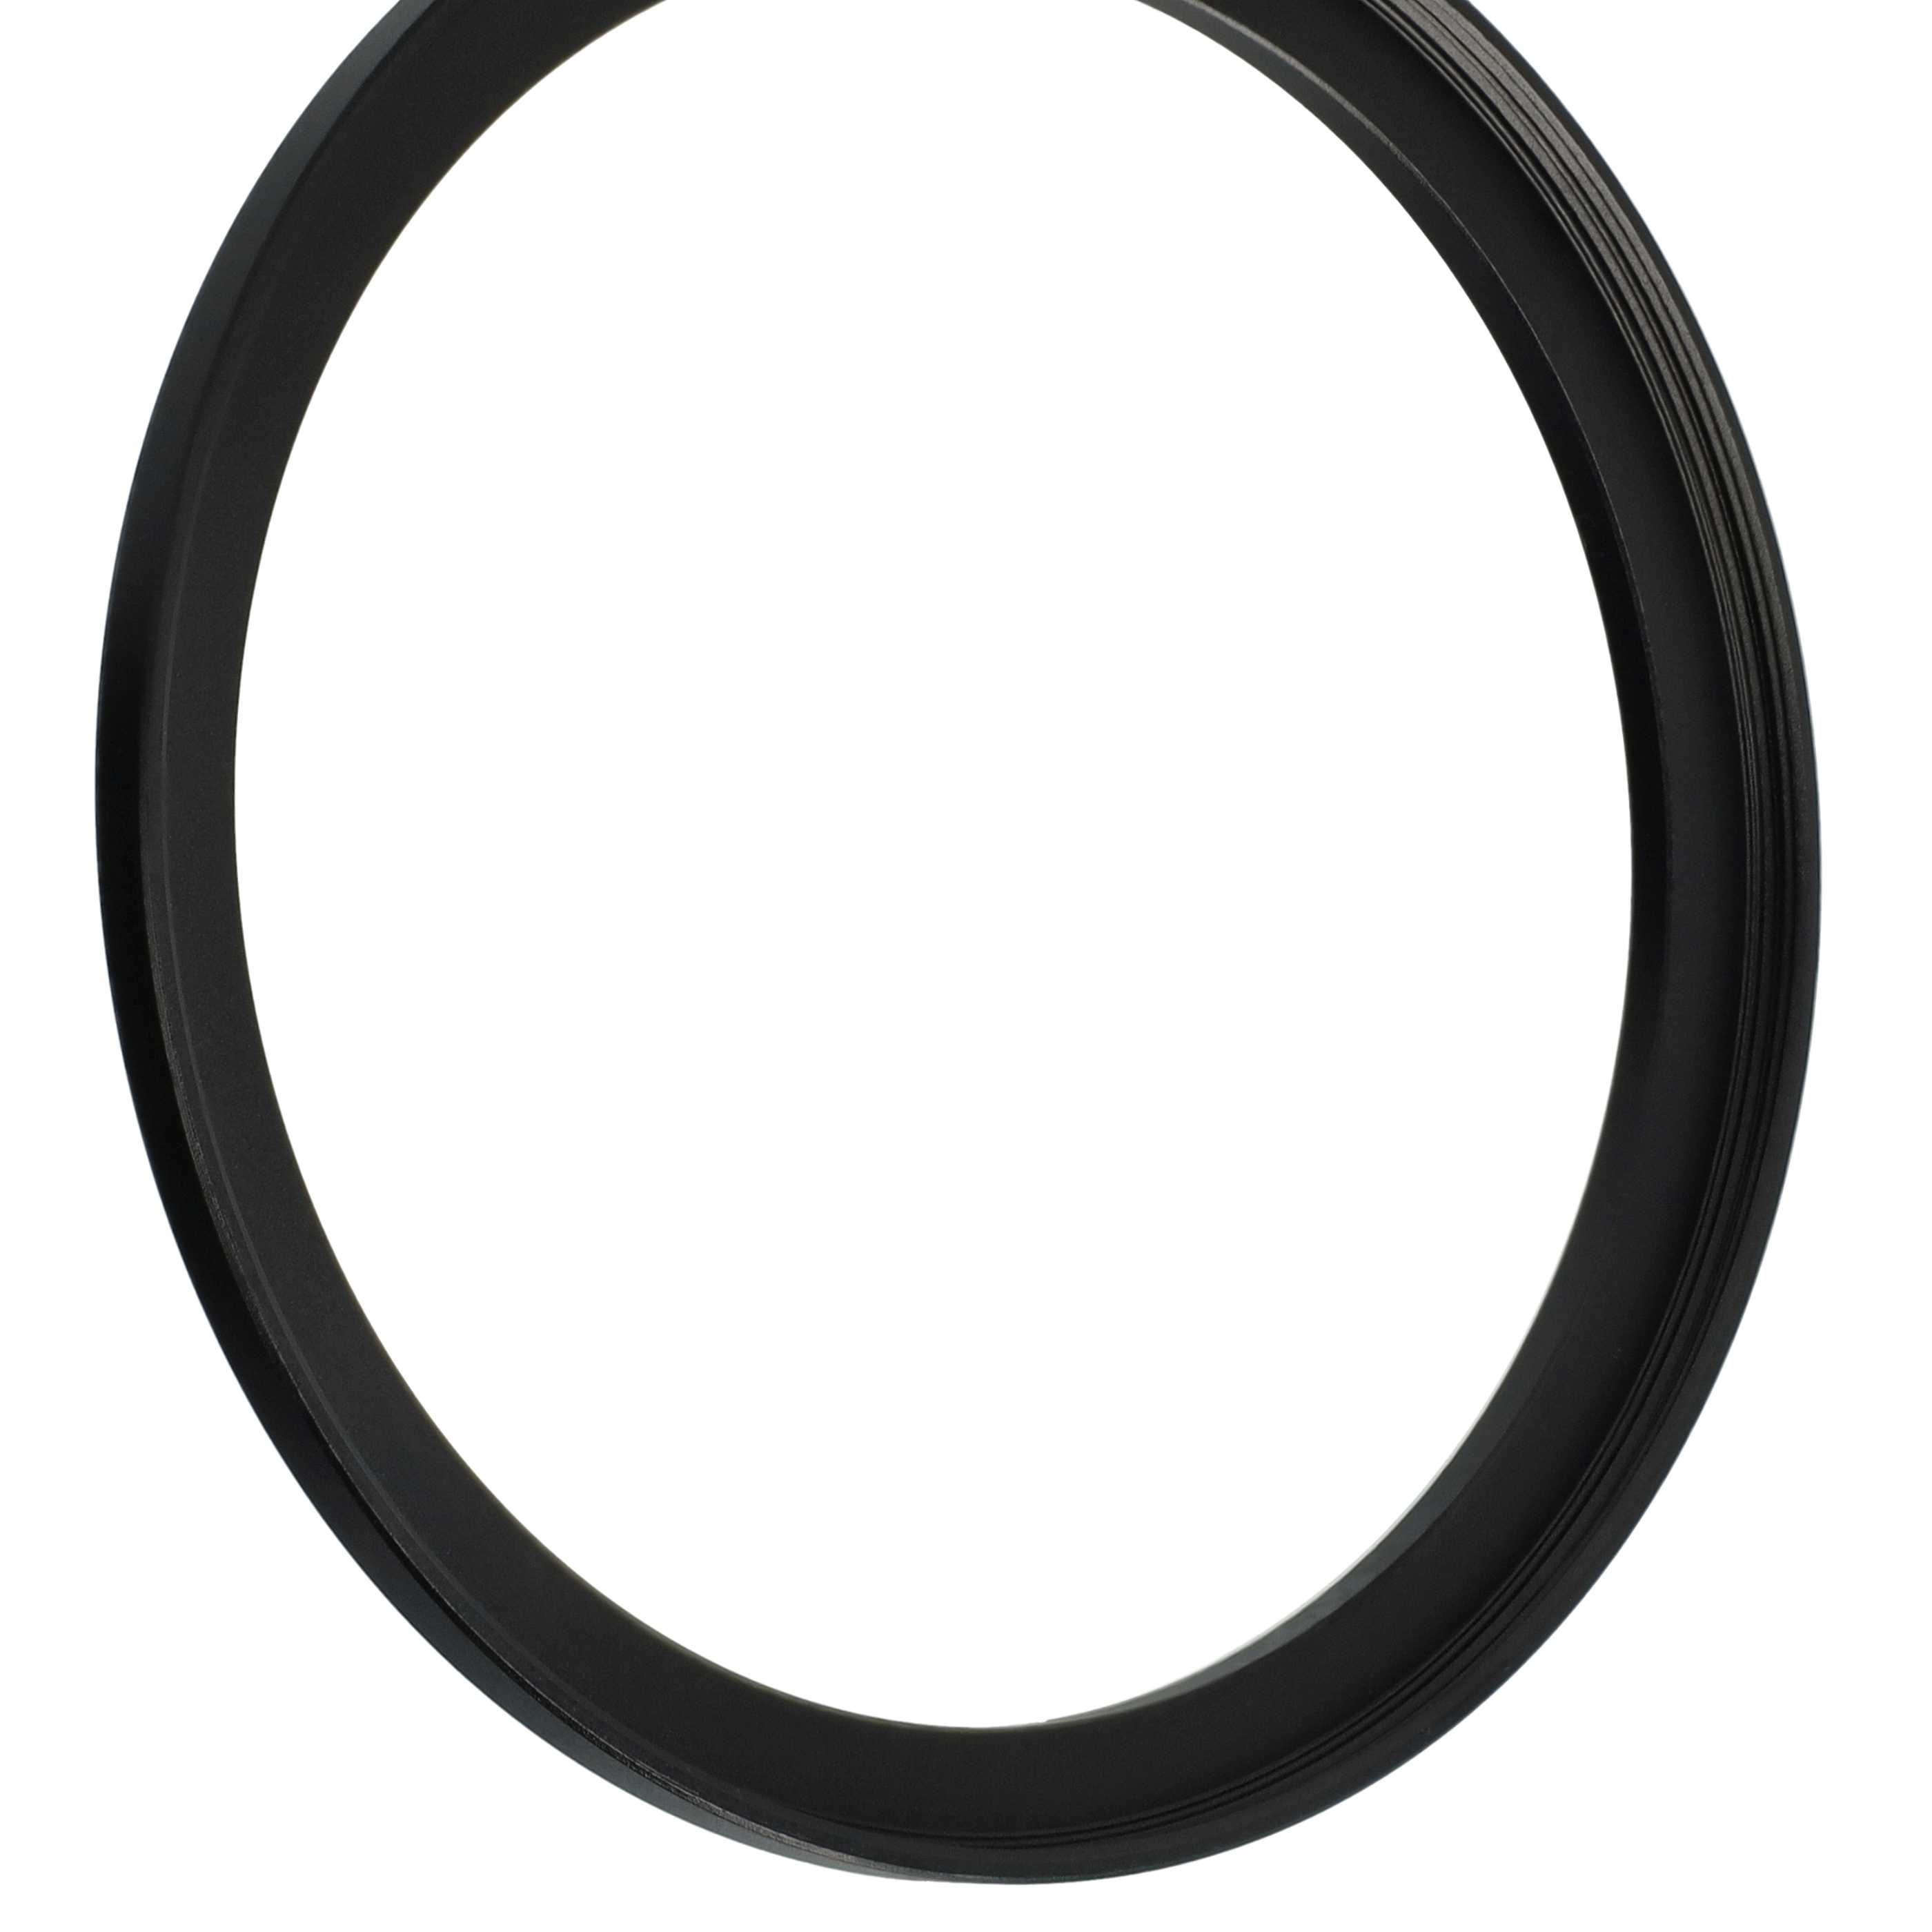 Step-Up-Ring Adapter 86 mm auf 95 mm passend für diverse Kamera-Objektive - Filteradapter